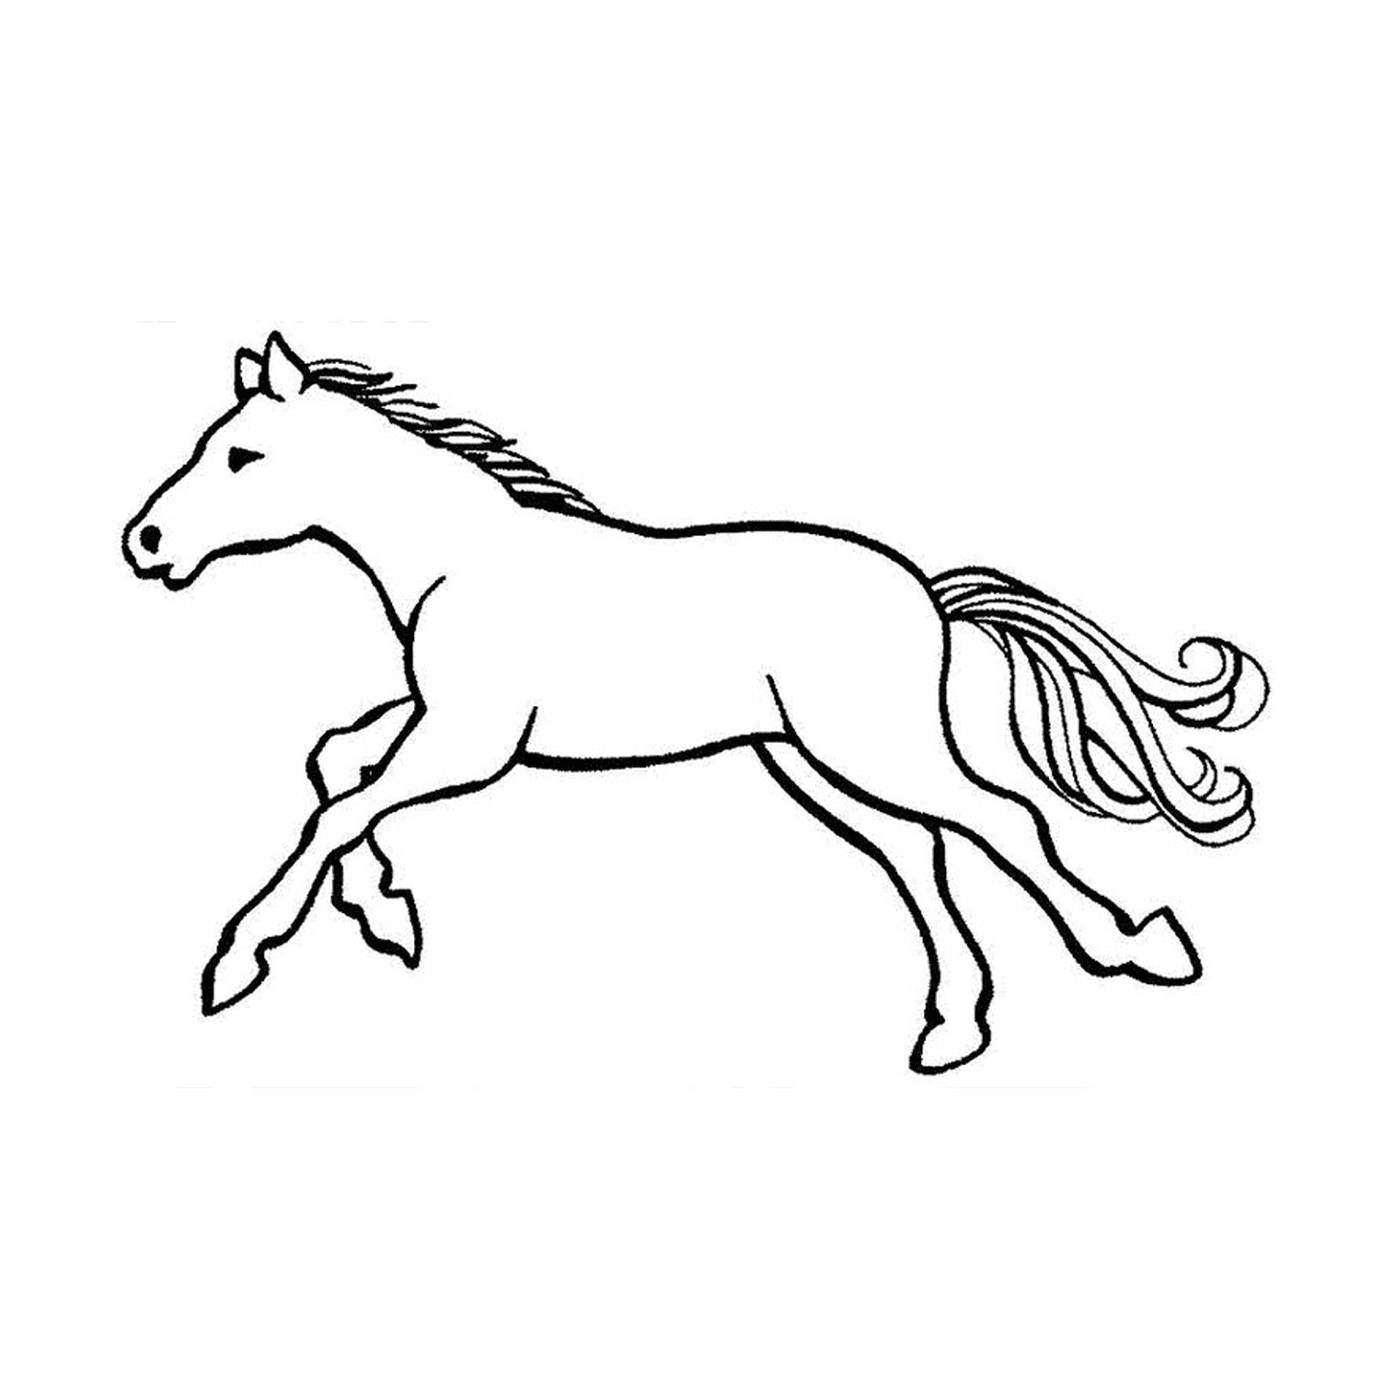  Caballos con galopes - Un caballo corriendo 